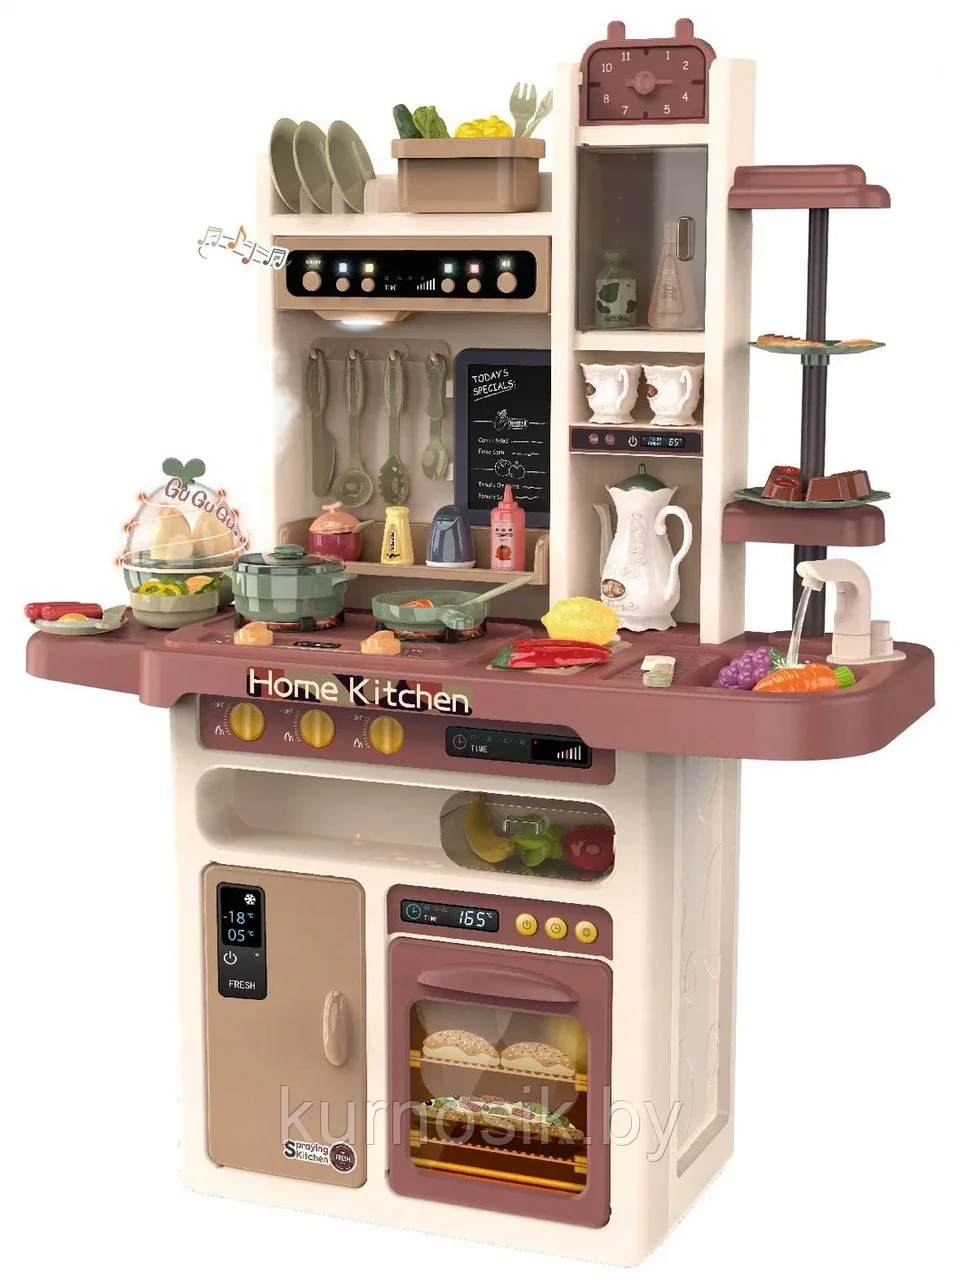 Детская кухня 889-212 Home Kitchen игровая с паром и водой 65 предметов, 94 см